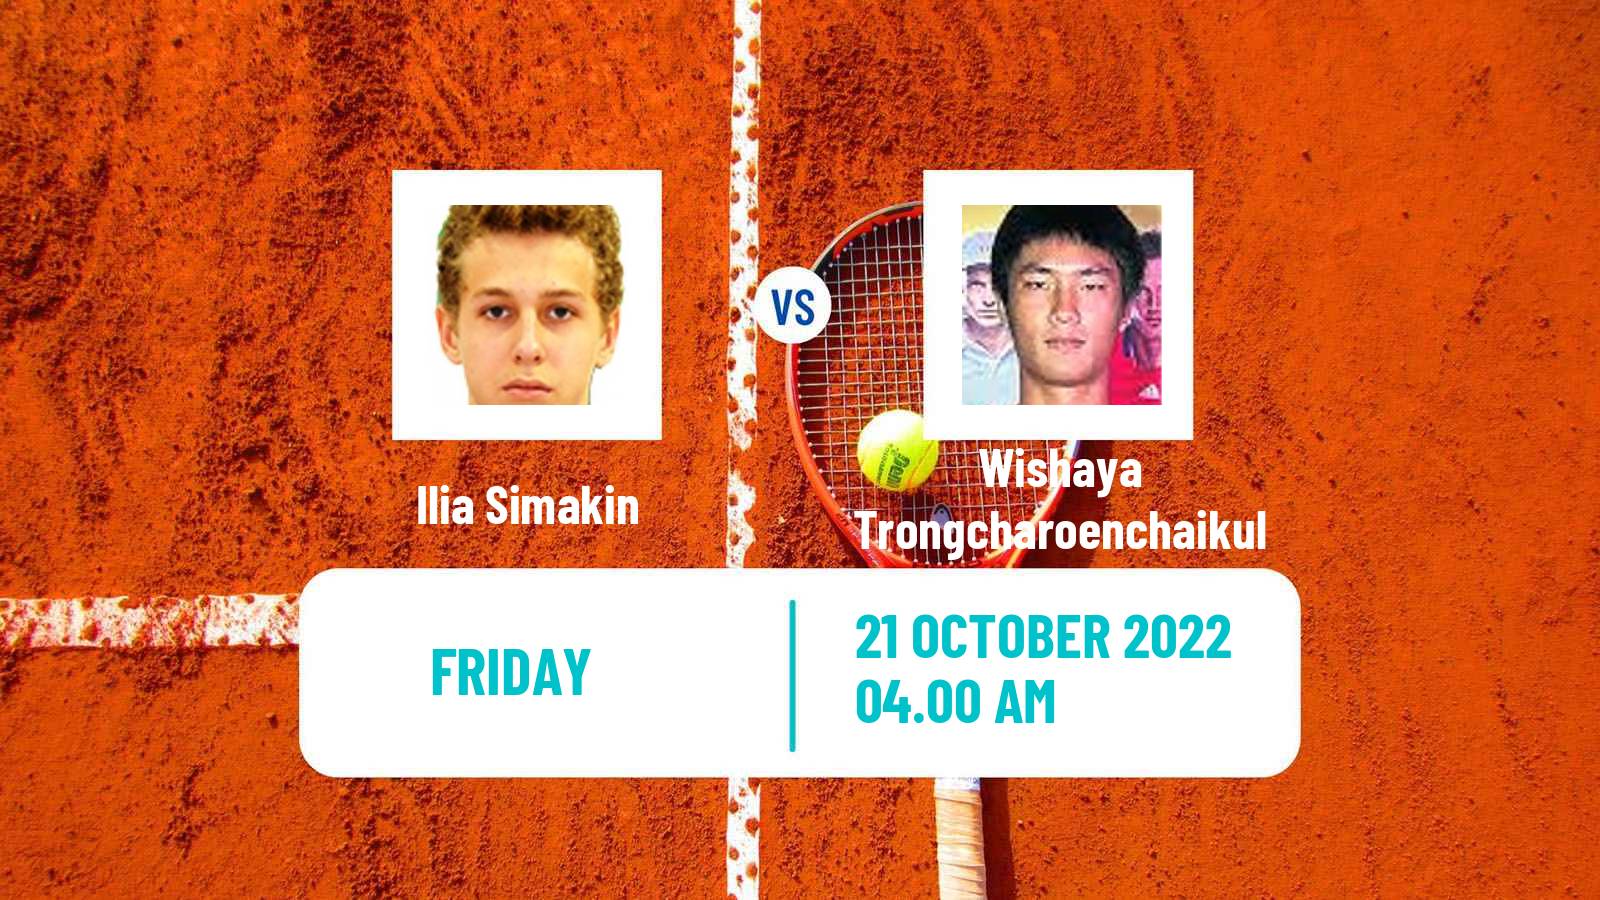 Tennis ITF Tournaments Ilia Simakin - Wishaya Trongcharoenchaikul